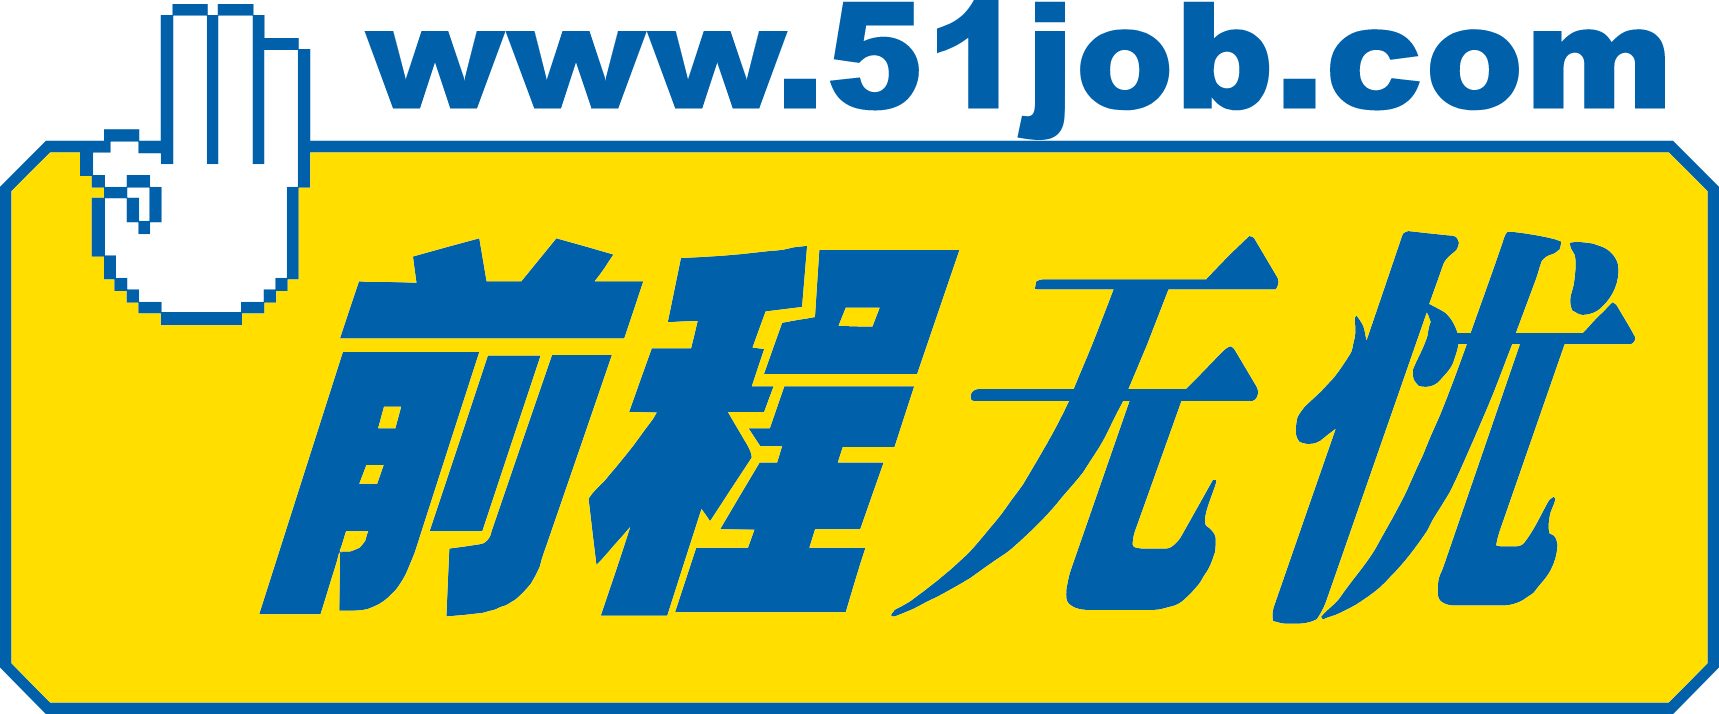 51job logo large (transparent PNG)